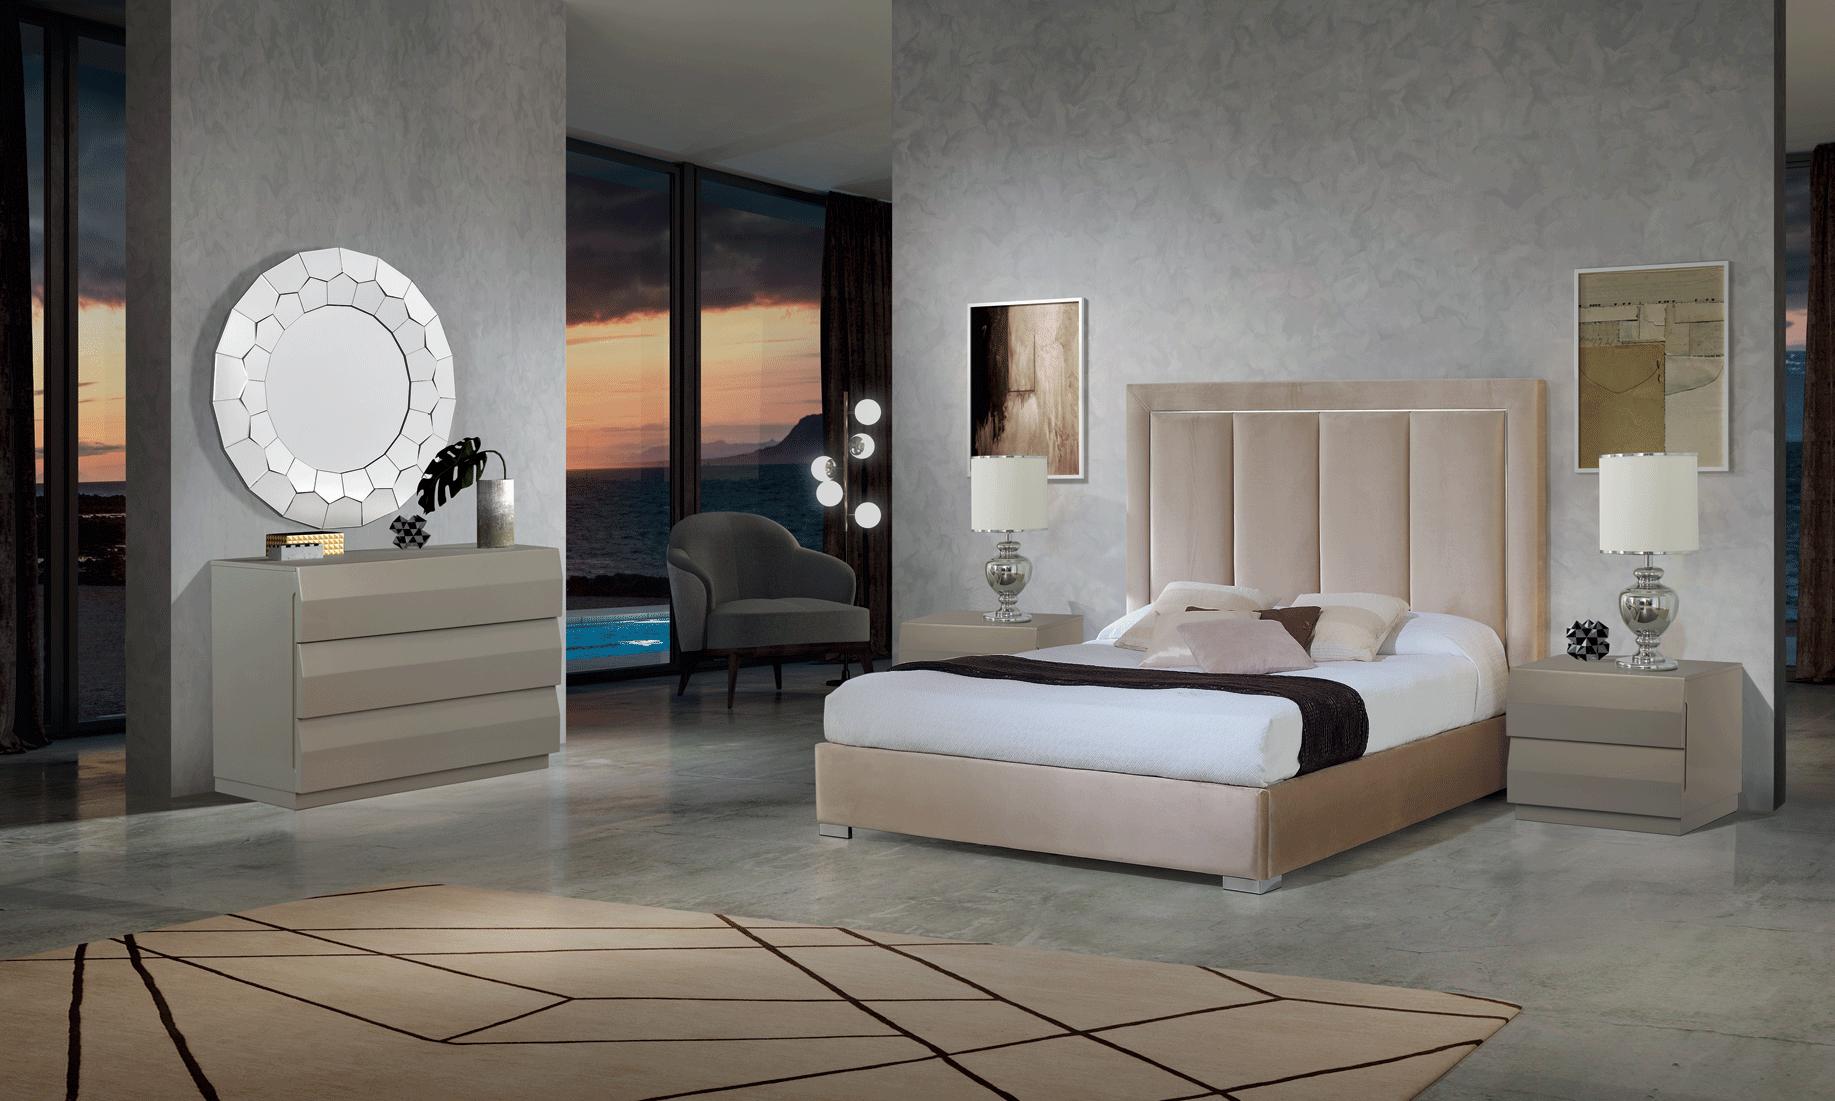 

    
Premium Beige Microfiber Upholstery Queen Bedroom Set 5Pcs Made in Spain ESF Monica
